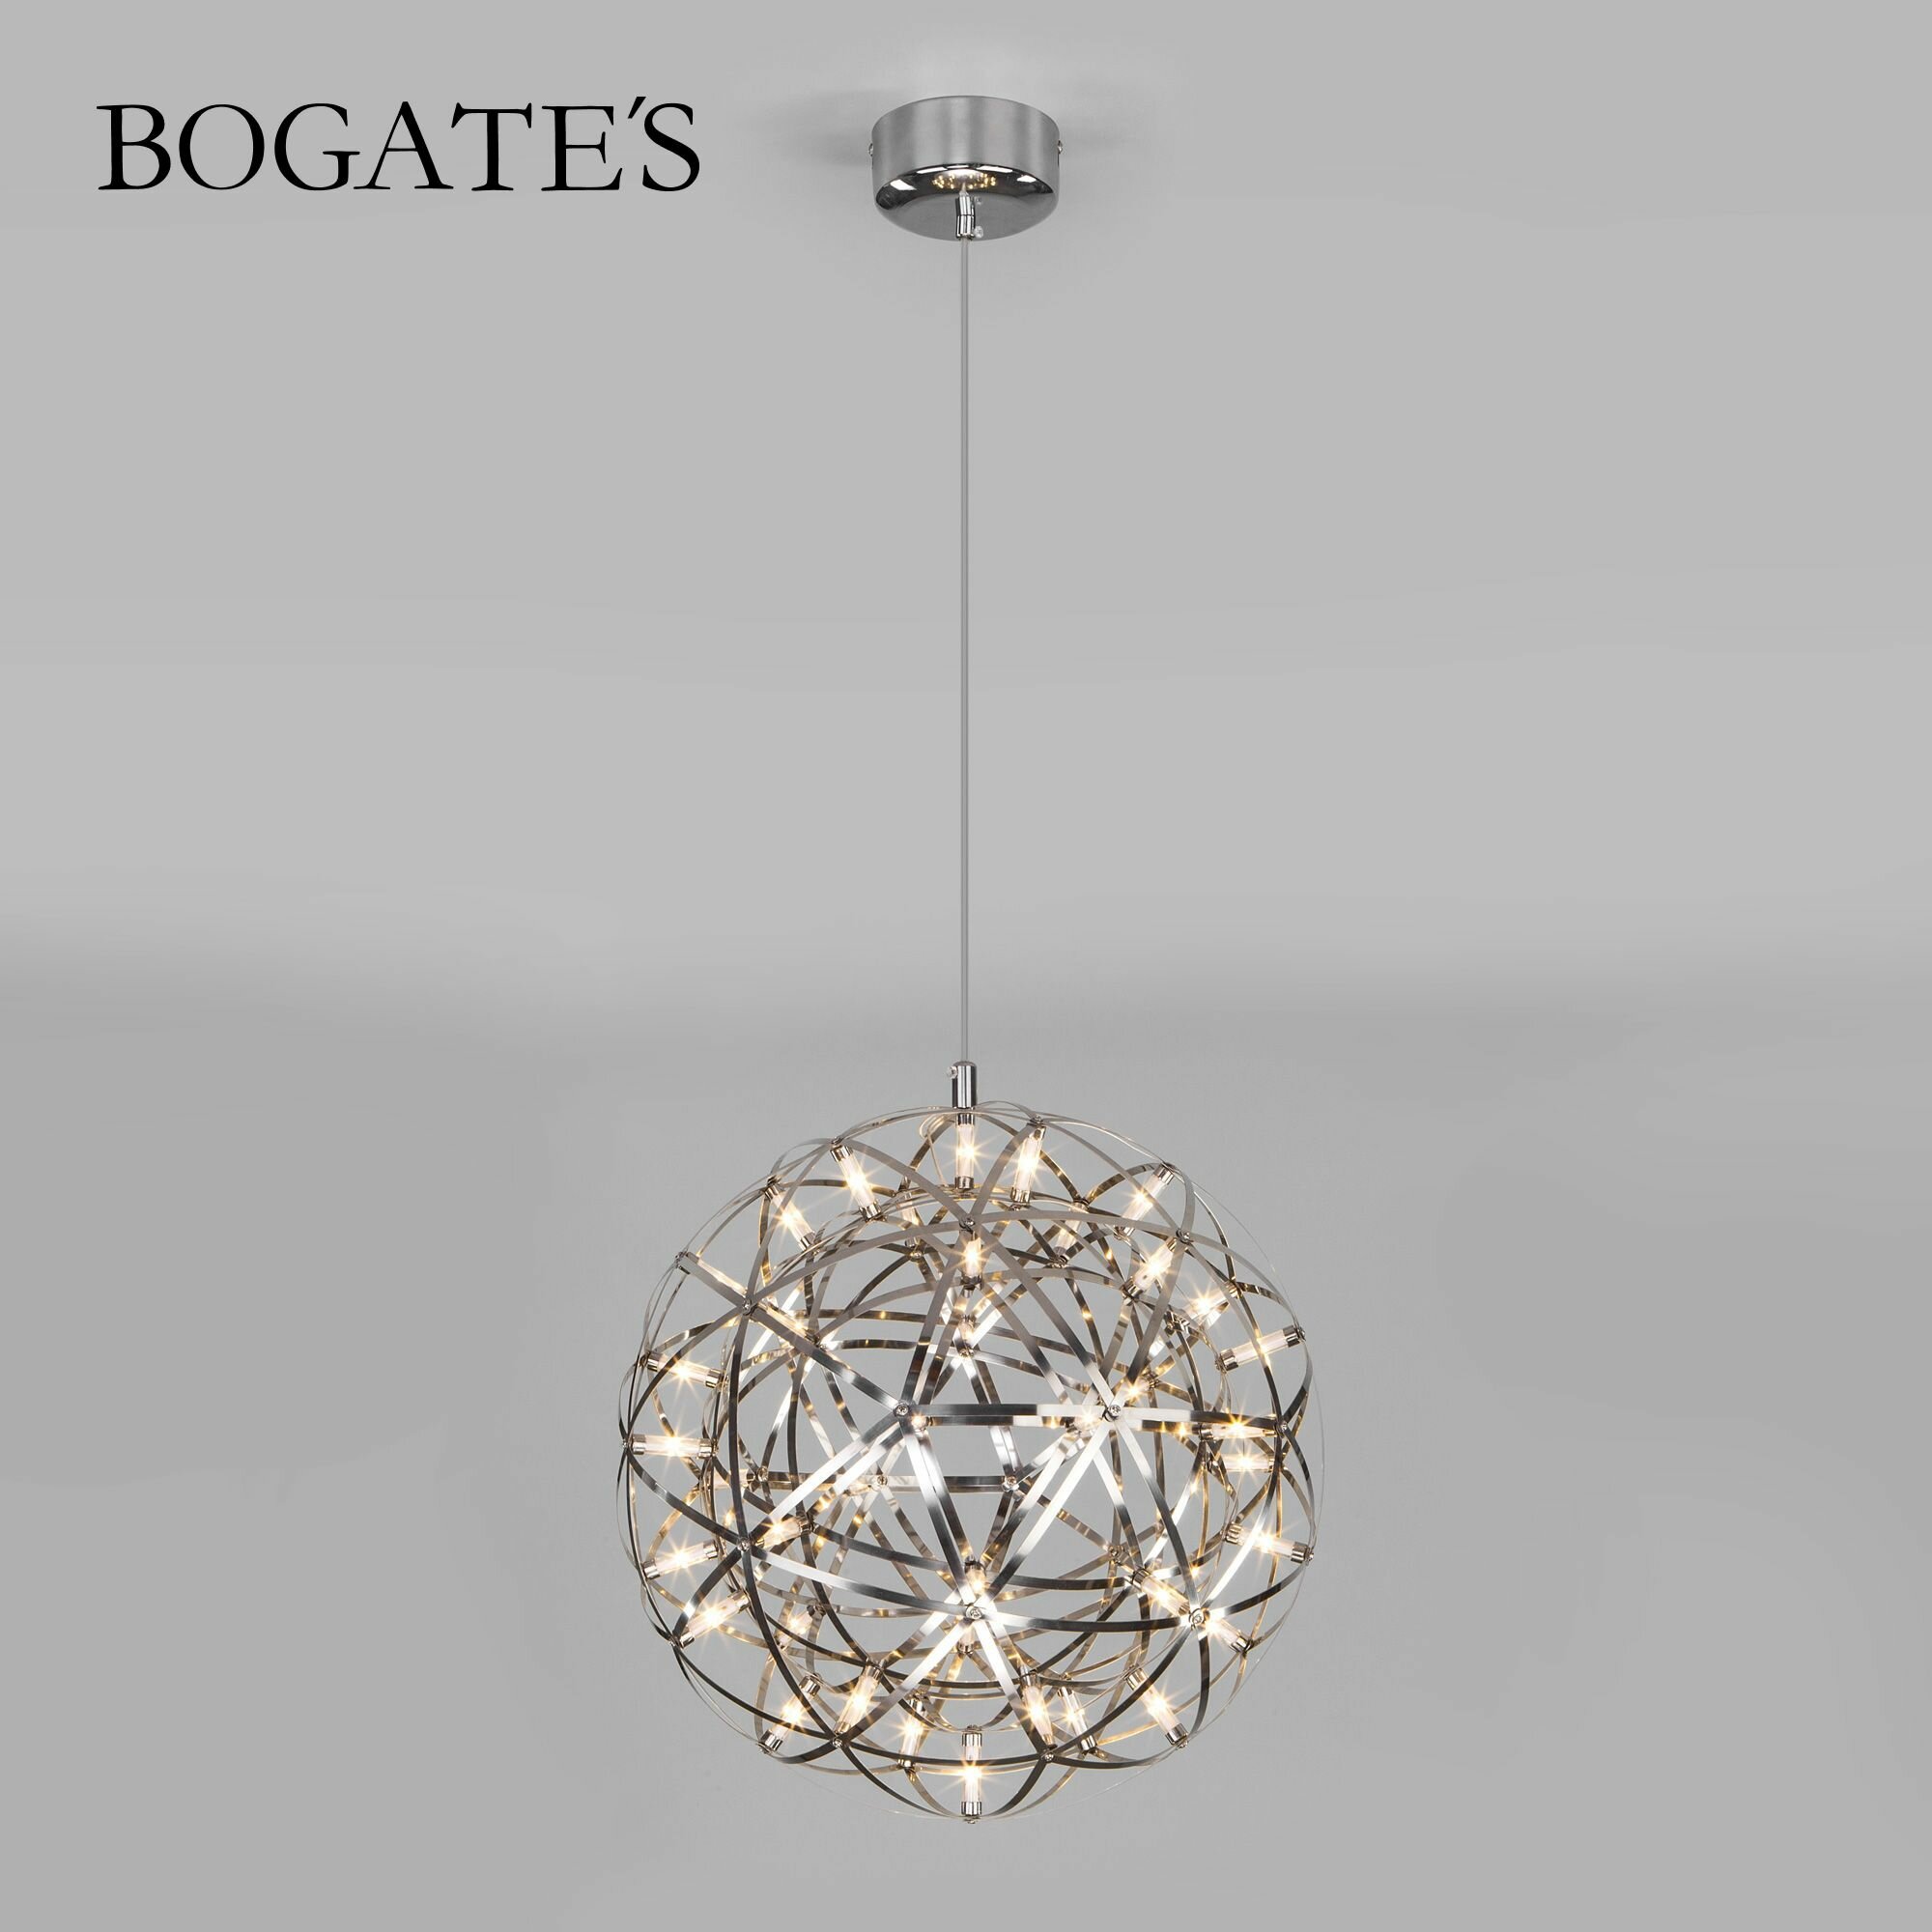 Люстра / Подвесной светодиодный светильник Bogate's Plesso 433/1 цвет хром